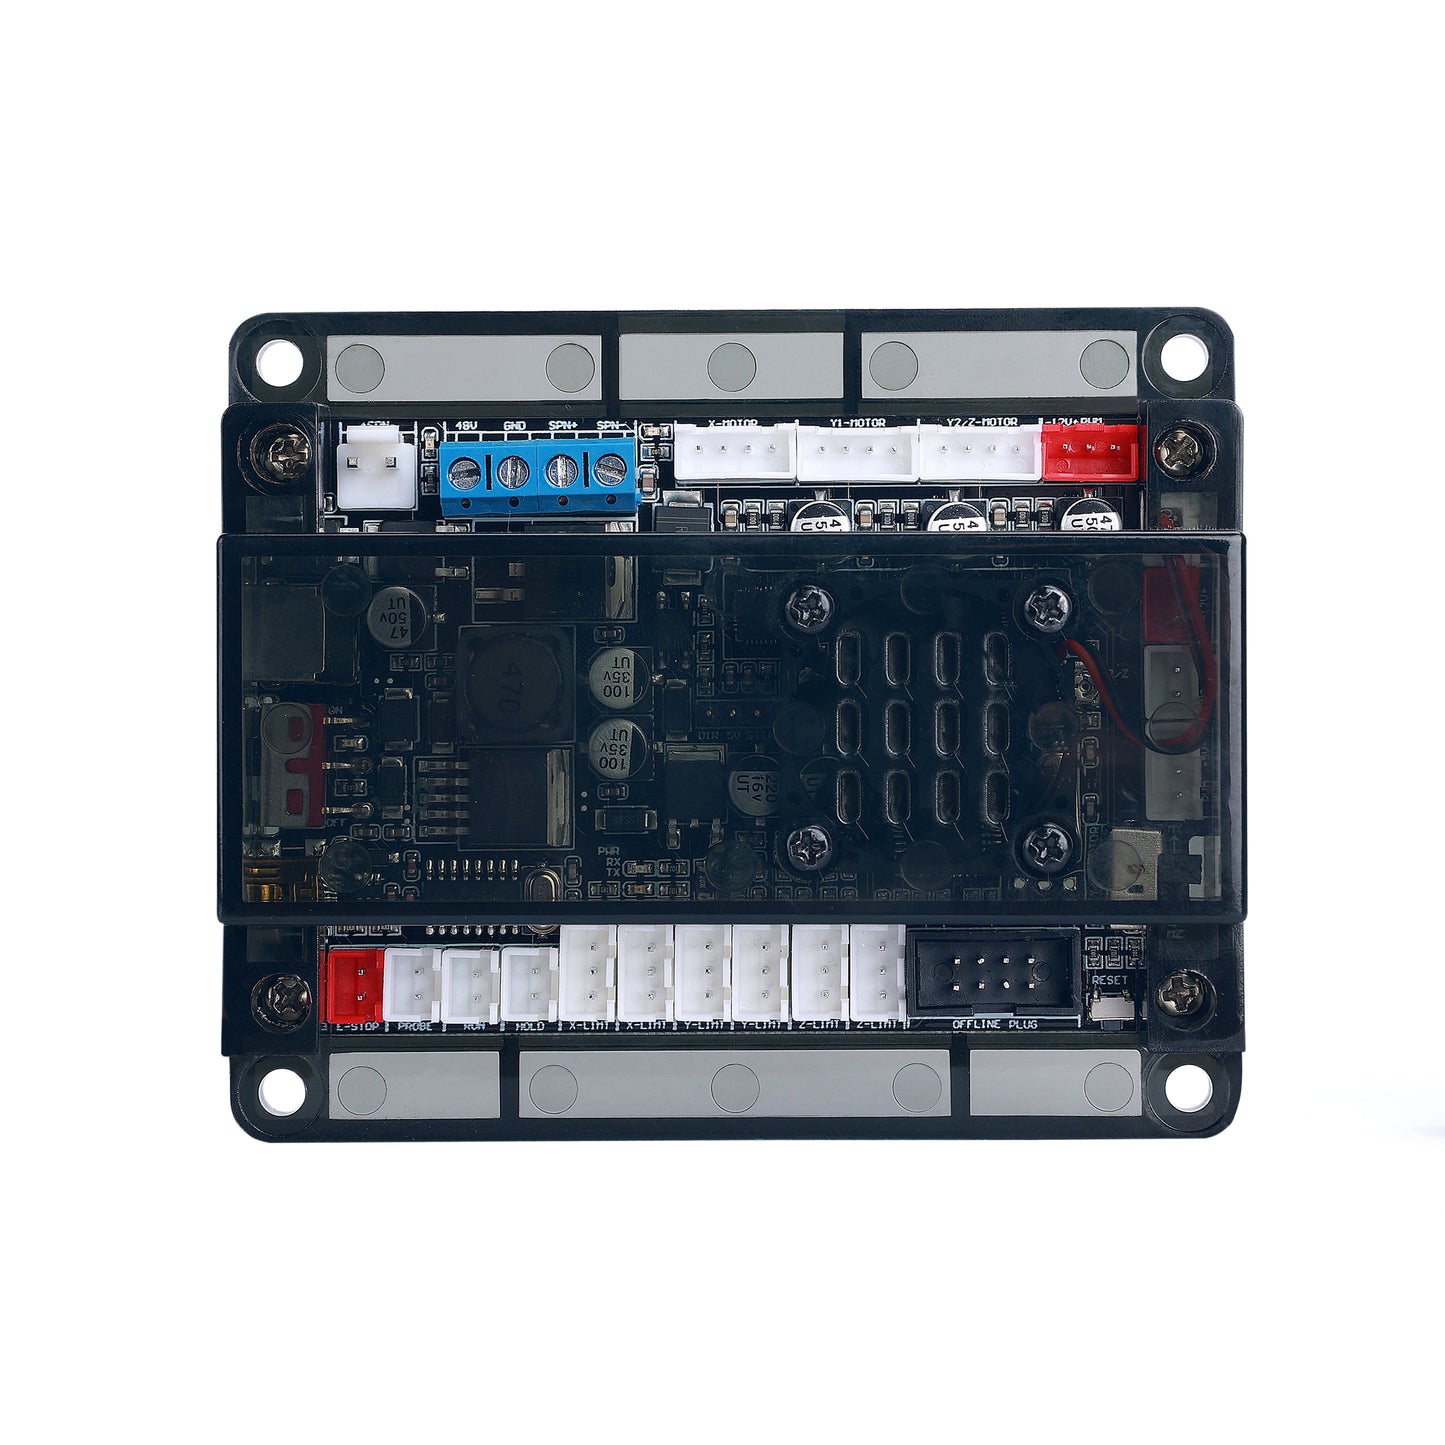 Mostics, CNC 3018 Pro Max Controller Board, GRBL 1.1.7 , 3 Axis Controller Board for CNC 3018 Pro